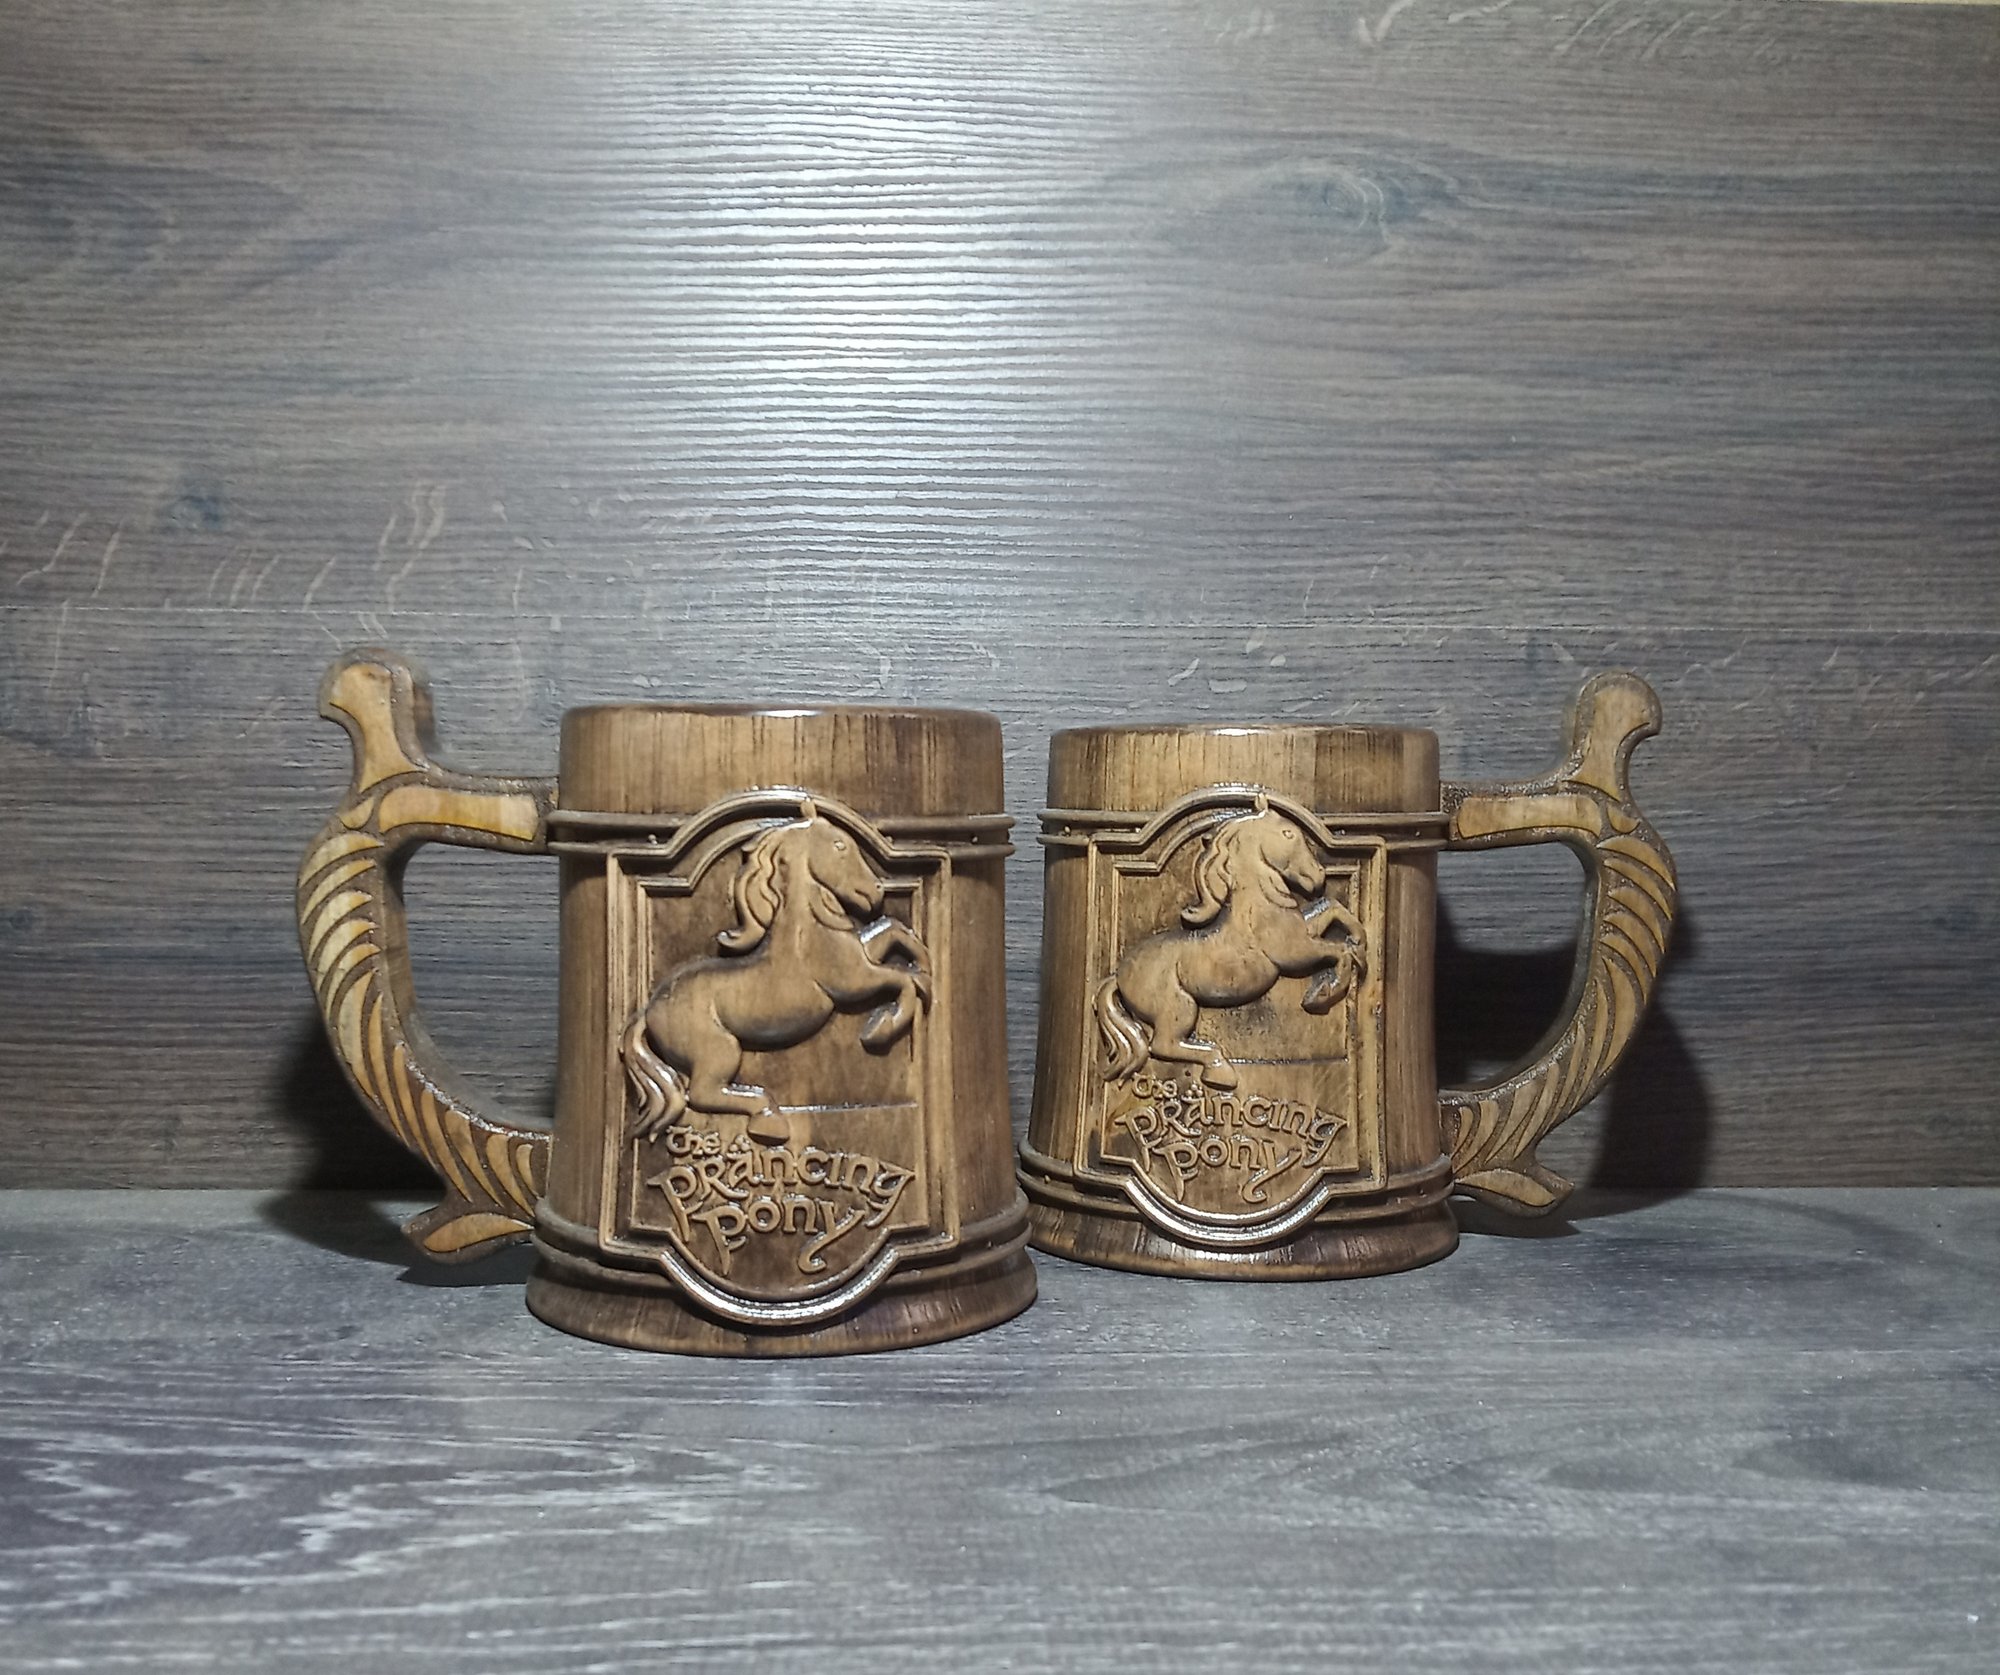 Lord of rings wooden beer mug, Groomsman gift, Personalized beer mug, 22oz,  Personalized gift